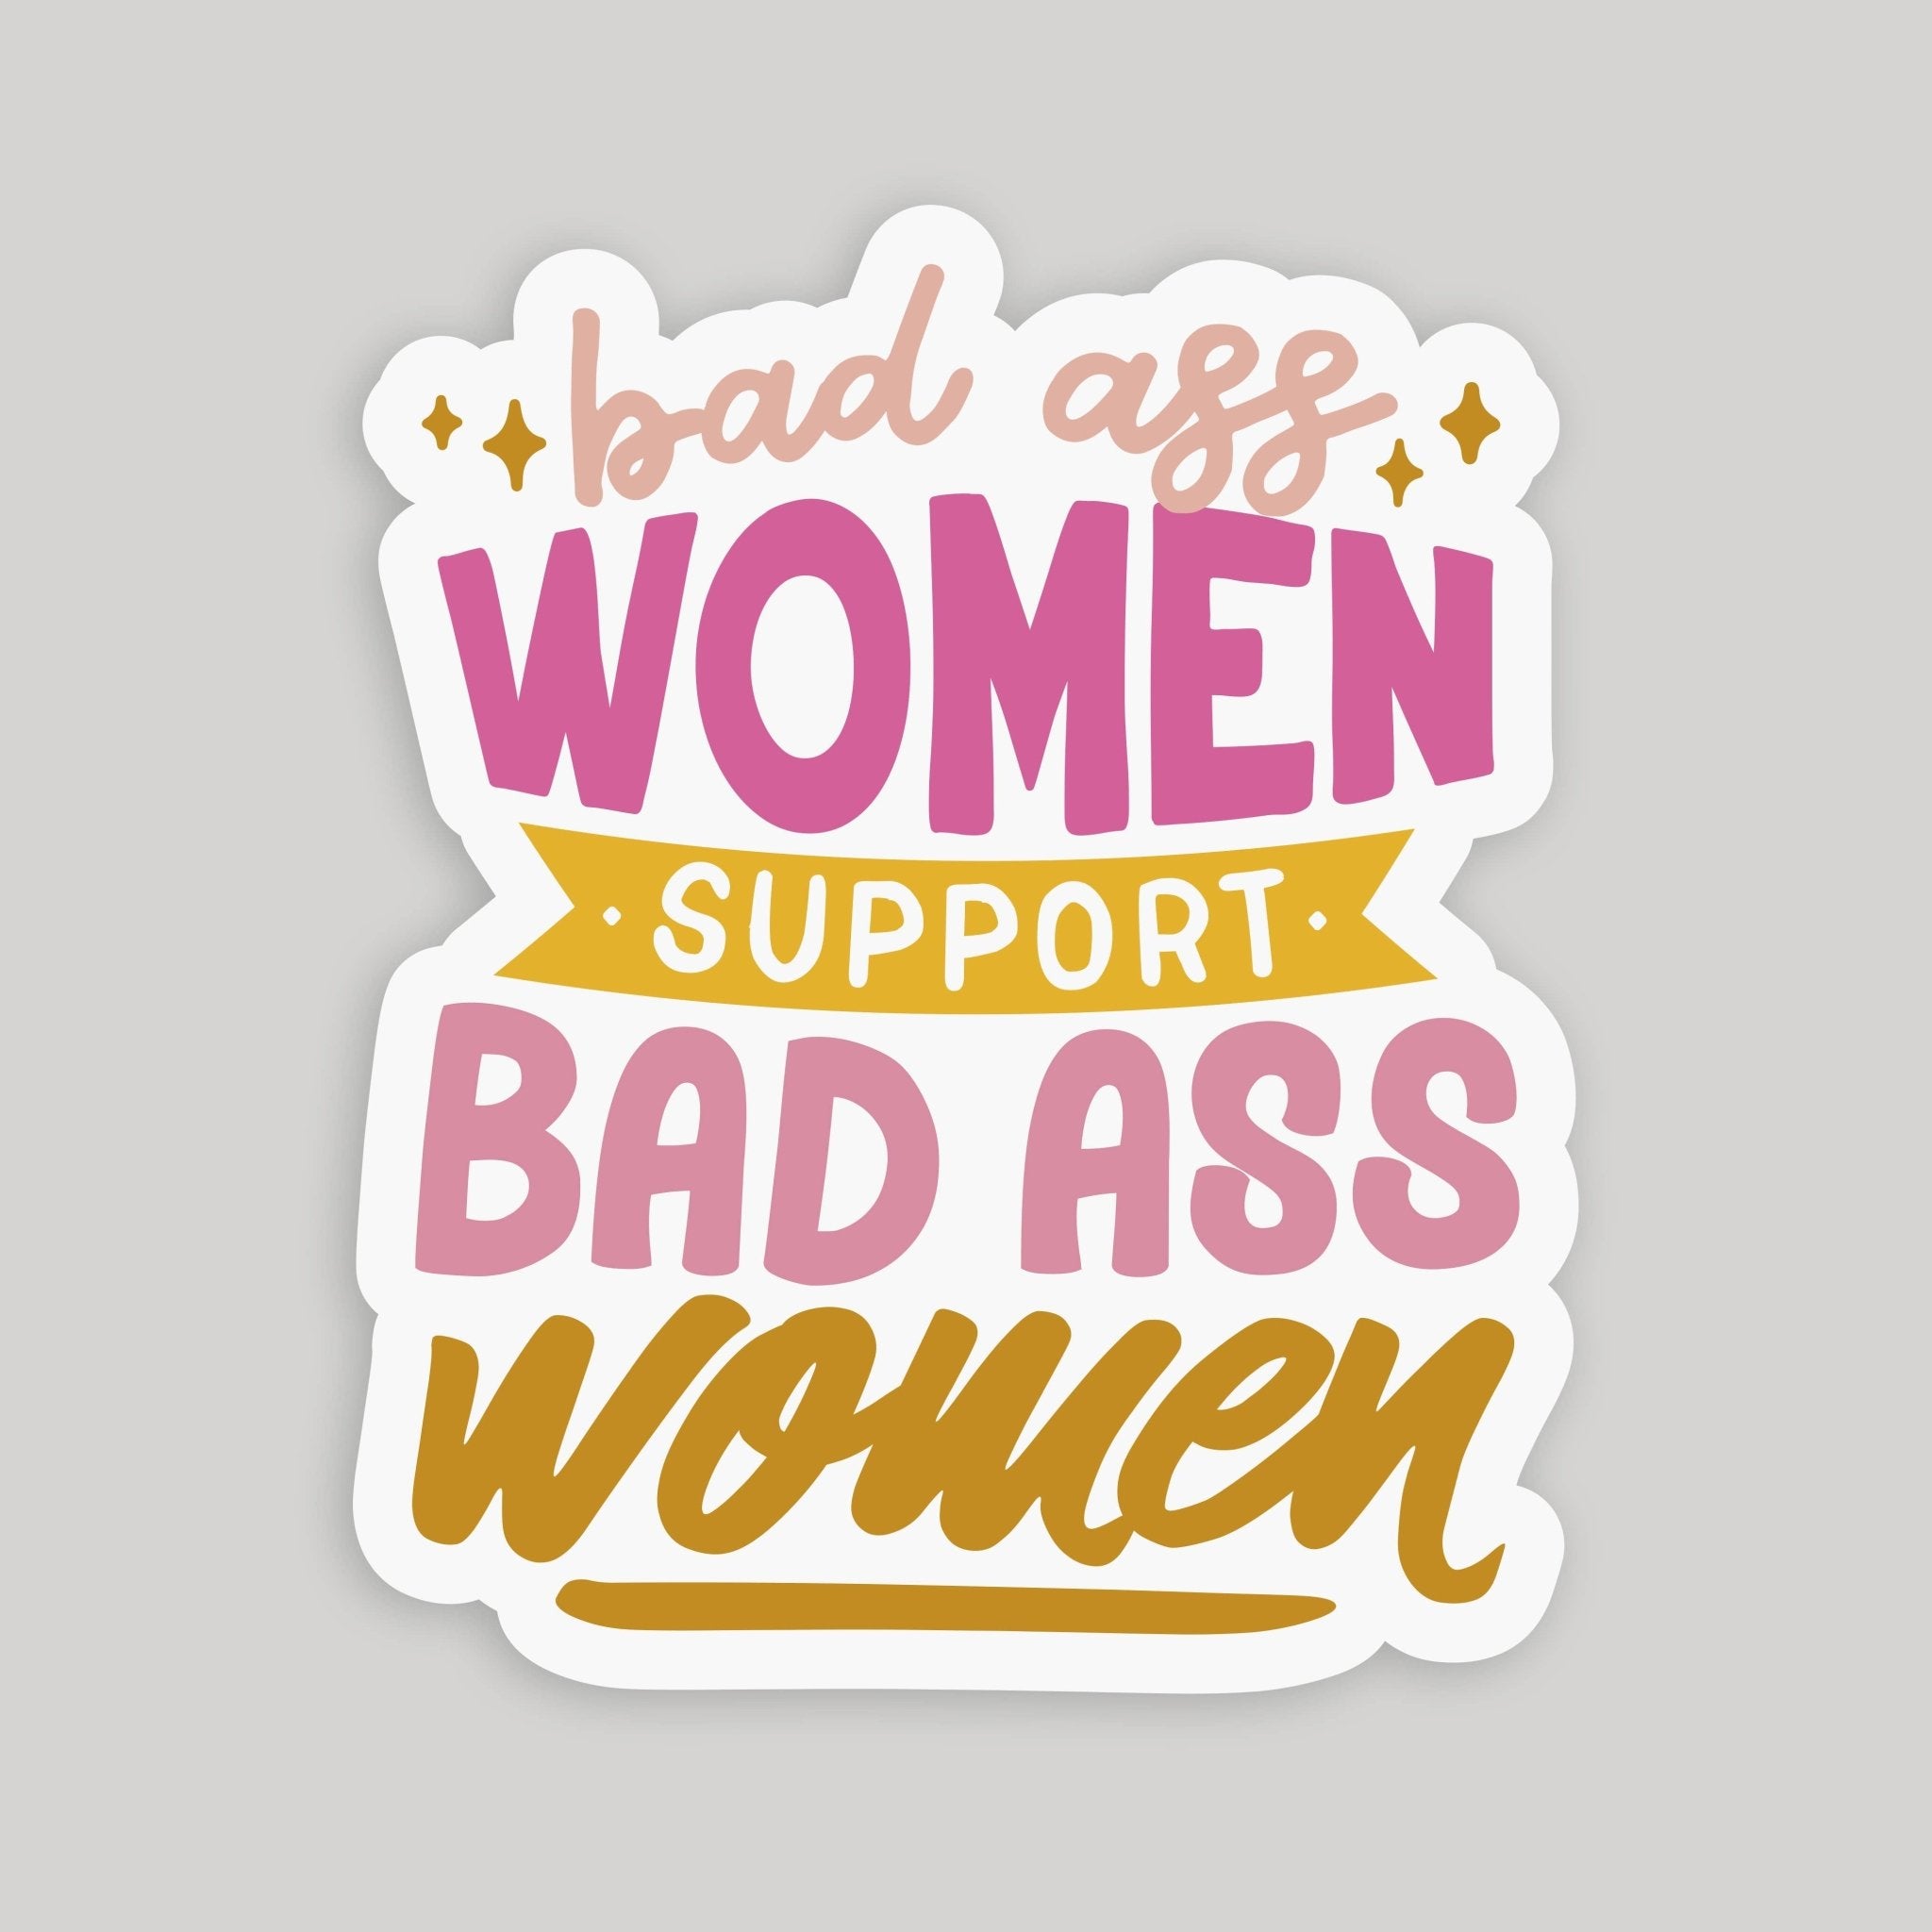 Badass Women Support Badass Women Glossy Sticker - SuperMom Headquarters